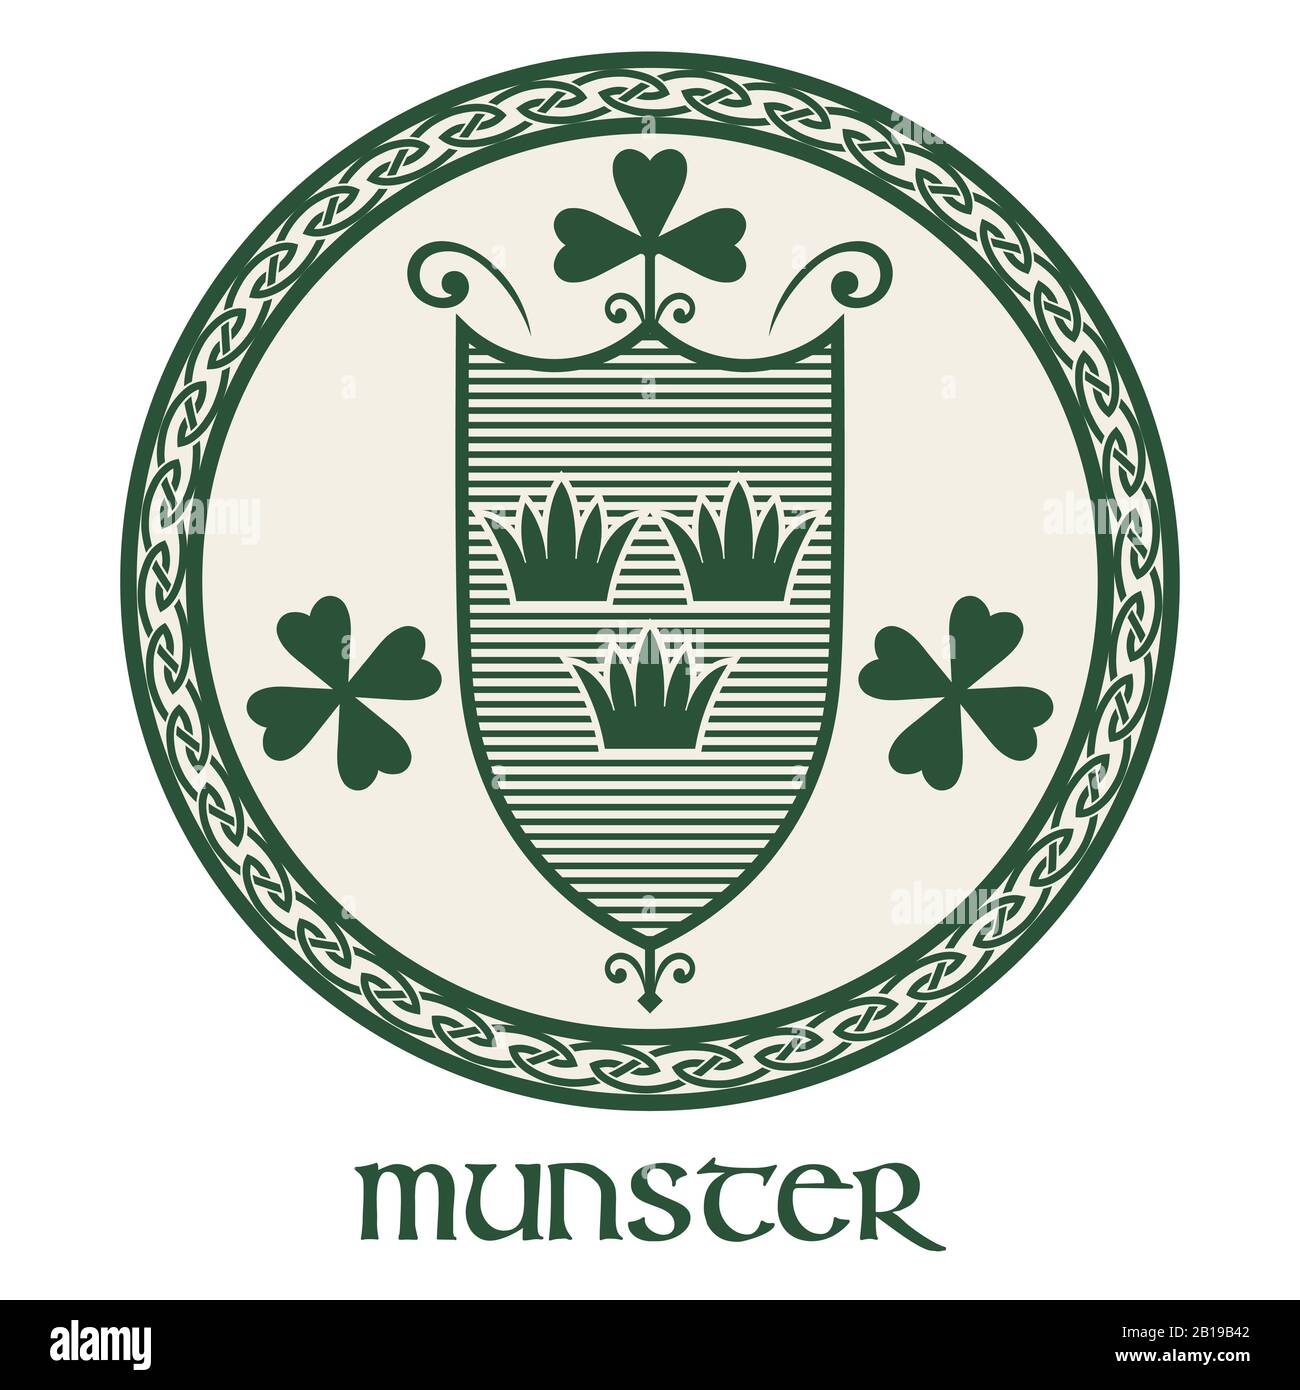 Irisches Celtic-Design im Vintage-Retro-Stil. Irisches Design mit Wappen der Provinz Munster Stock Vektor